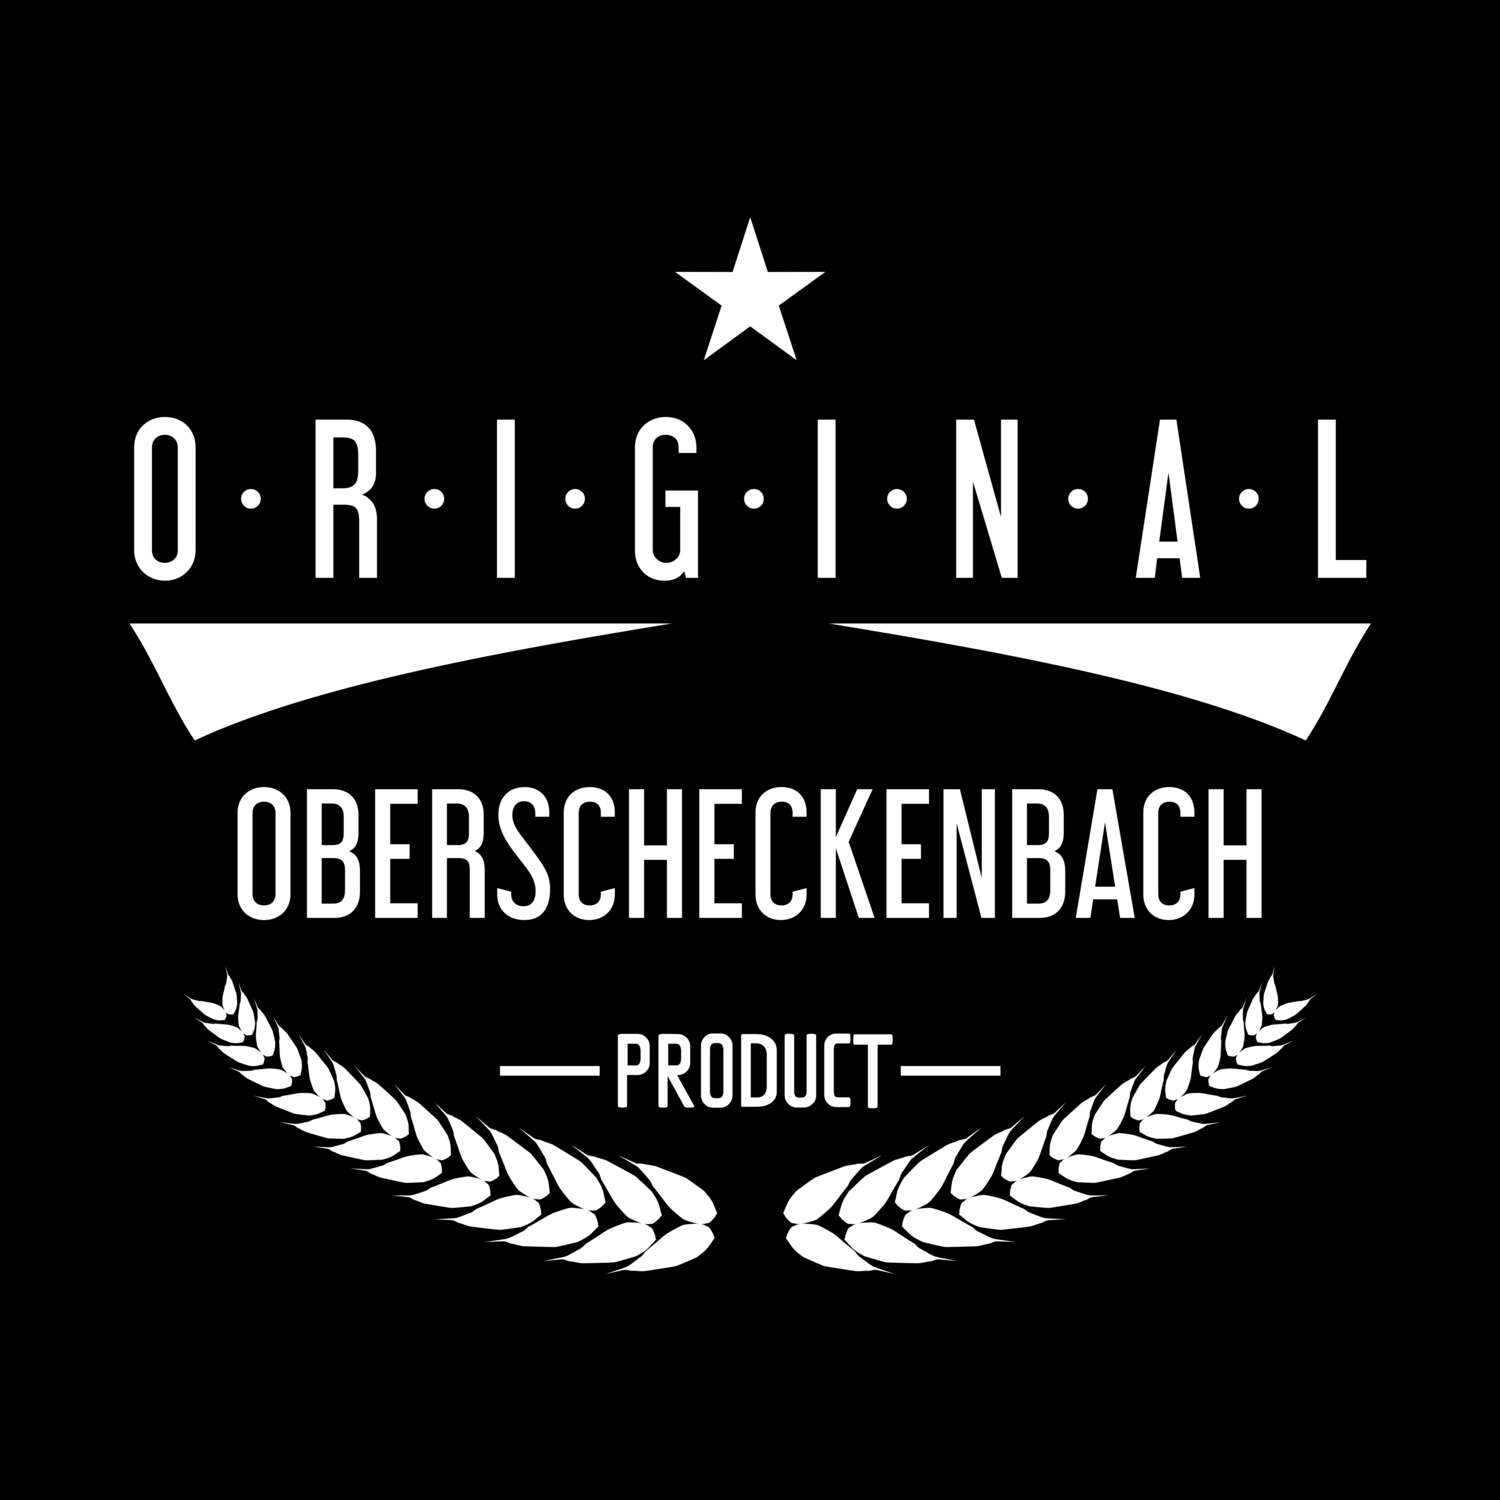 Oberscheckenbach T-Shirt »Original Product«